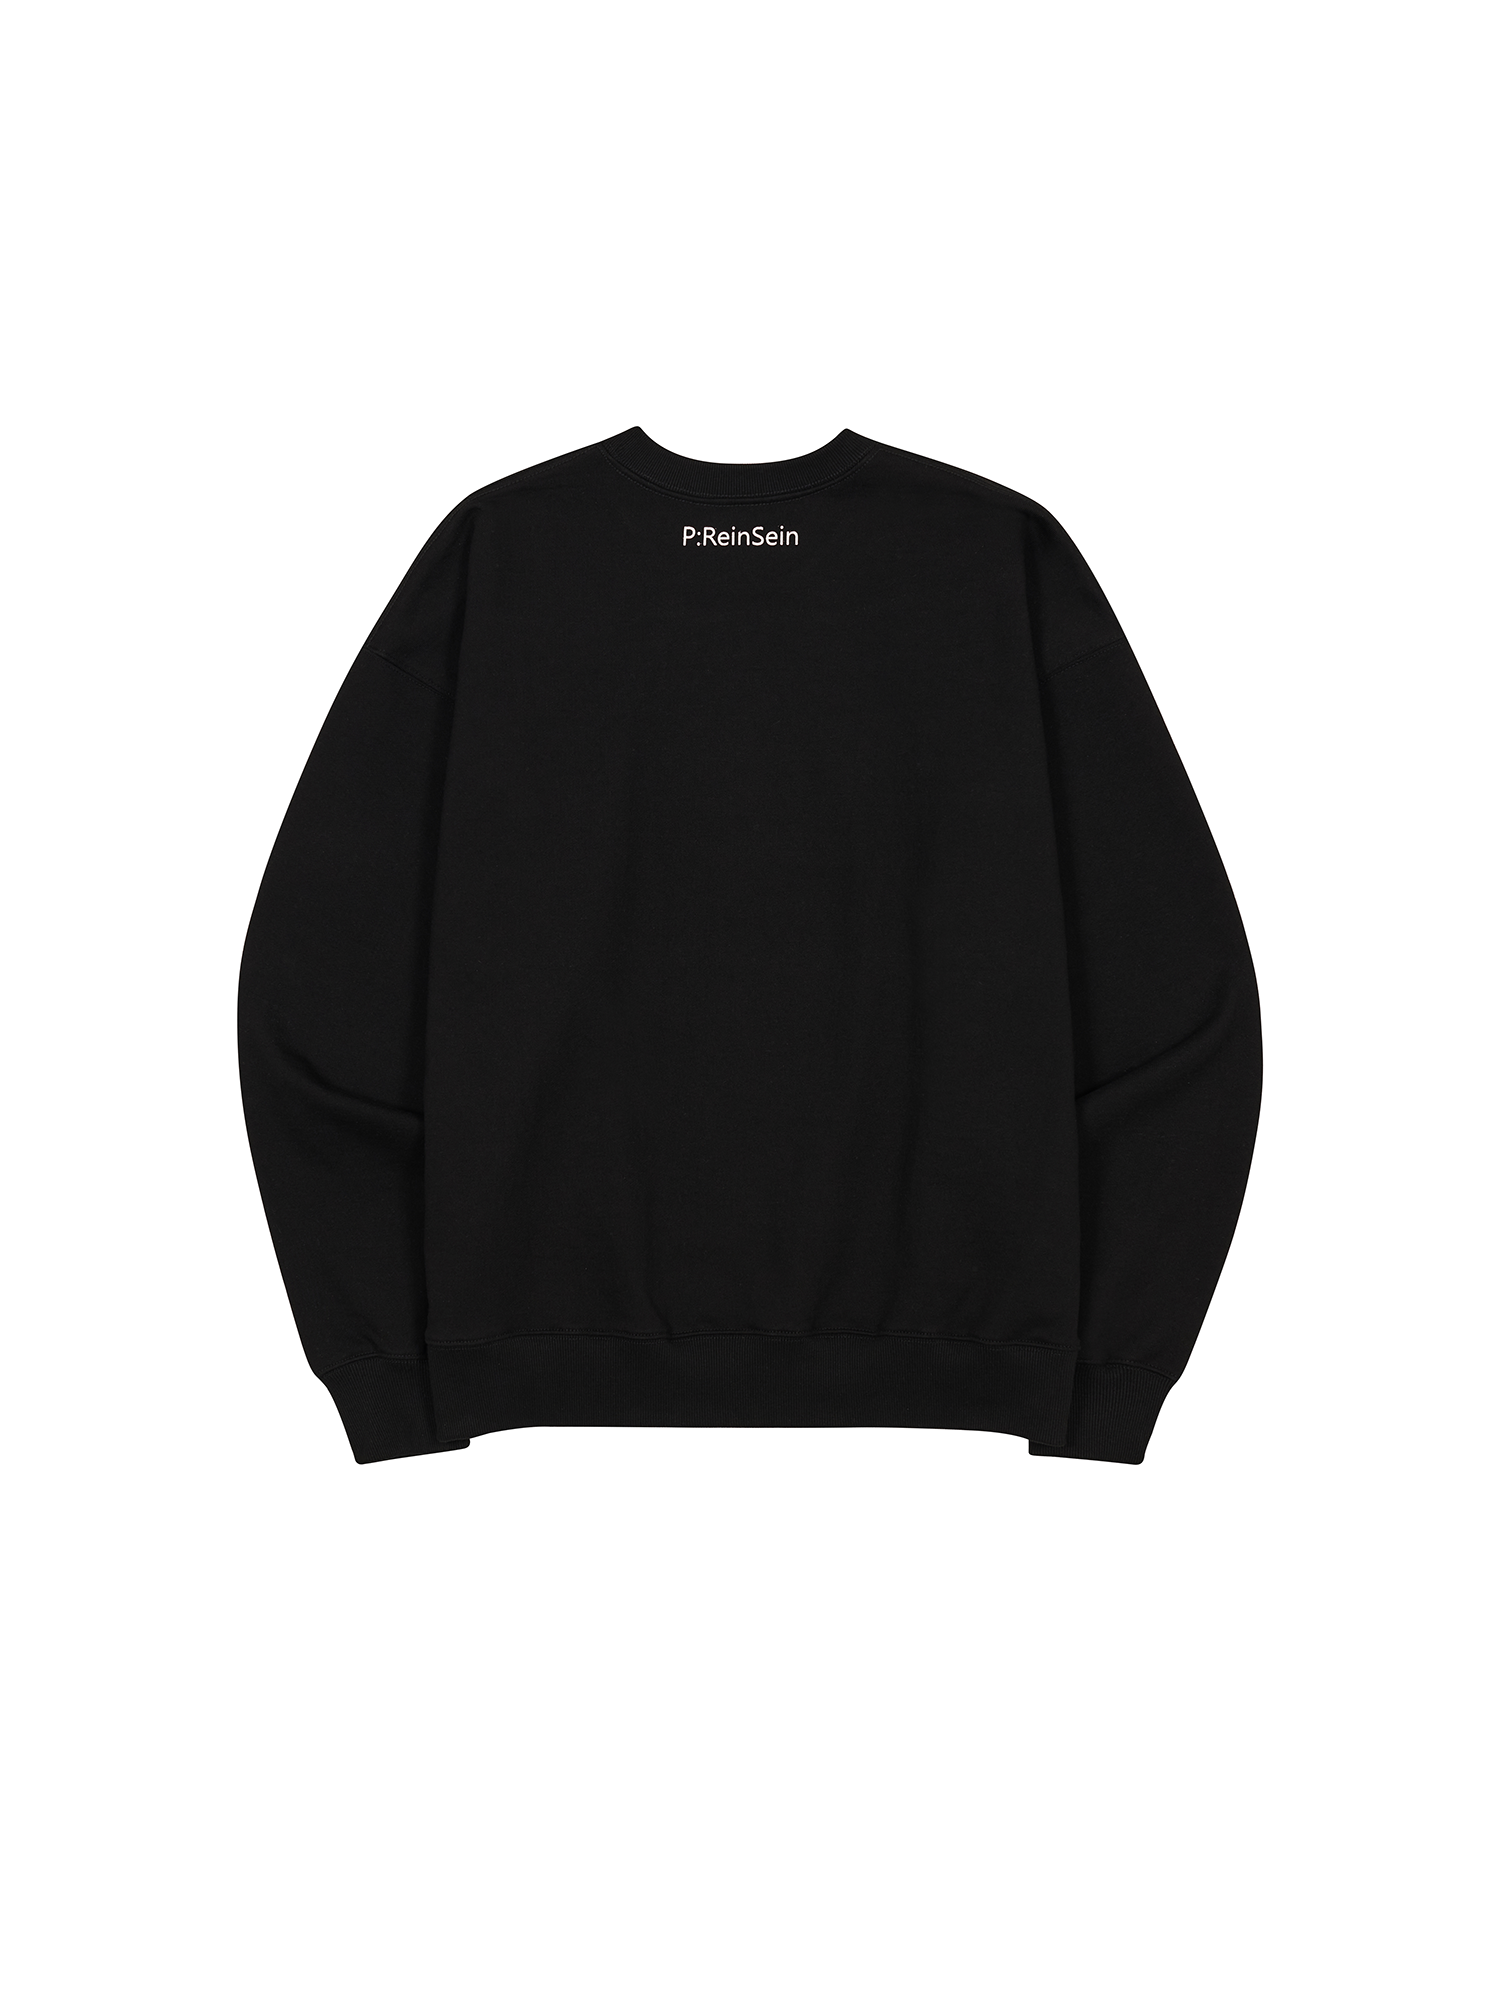 ReinSein Black sweatshirt